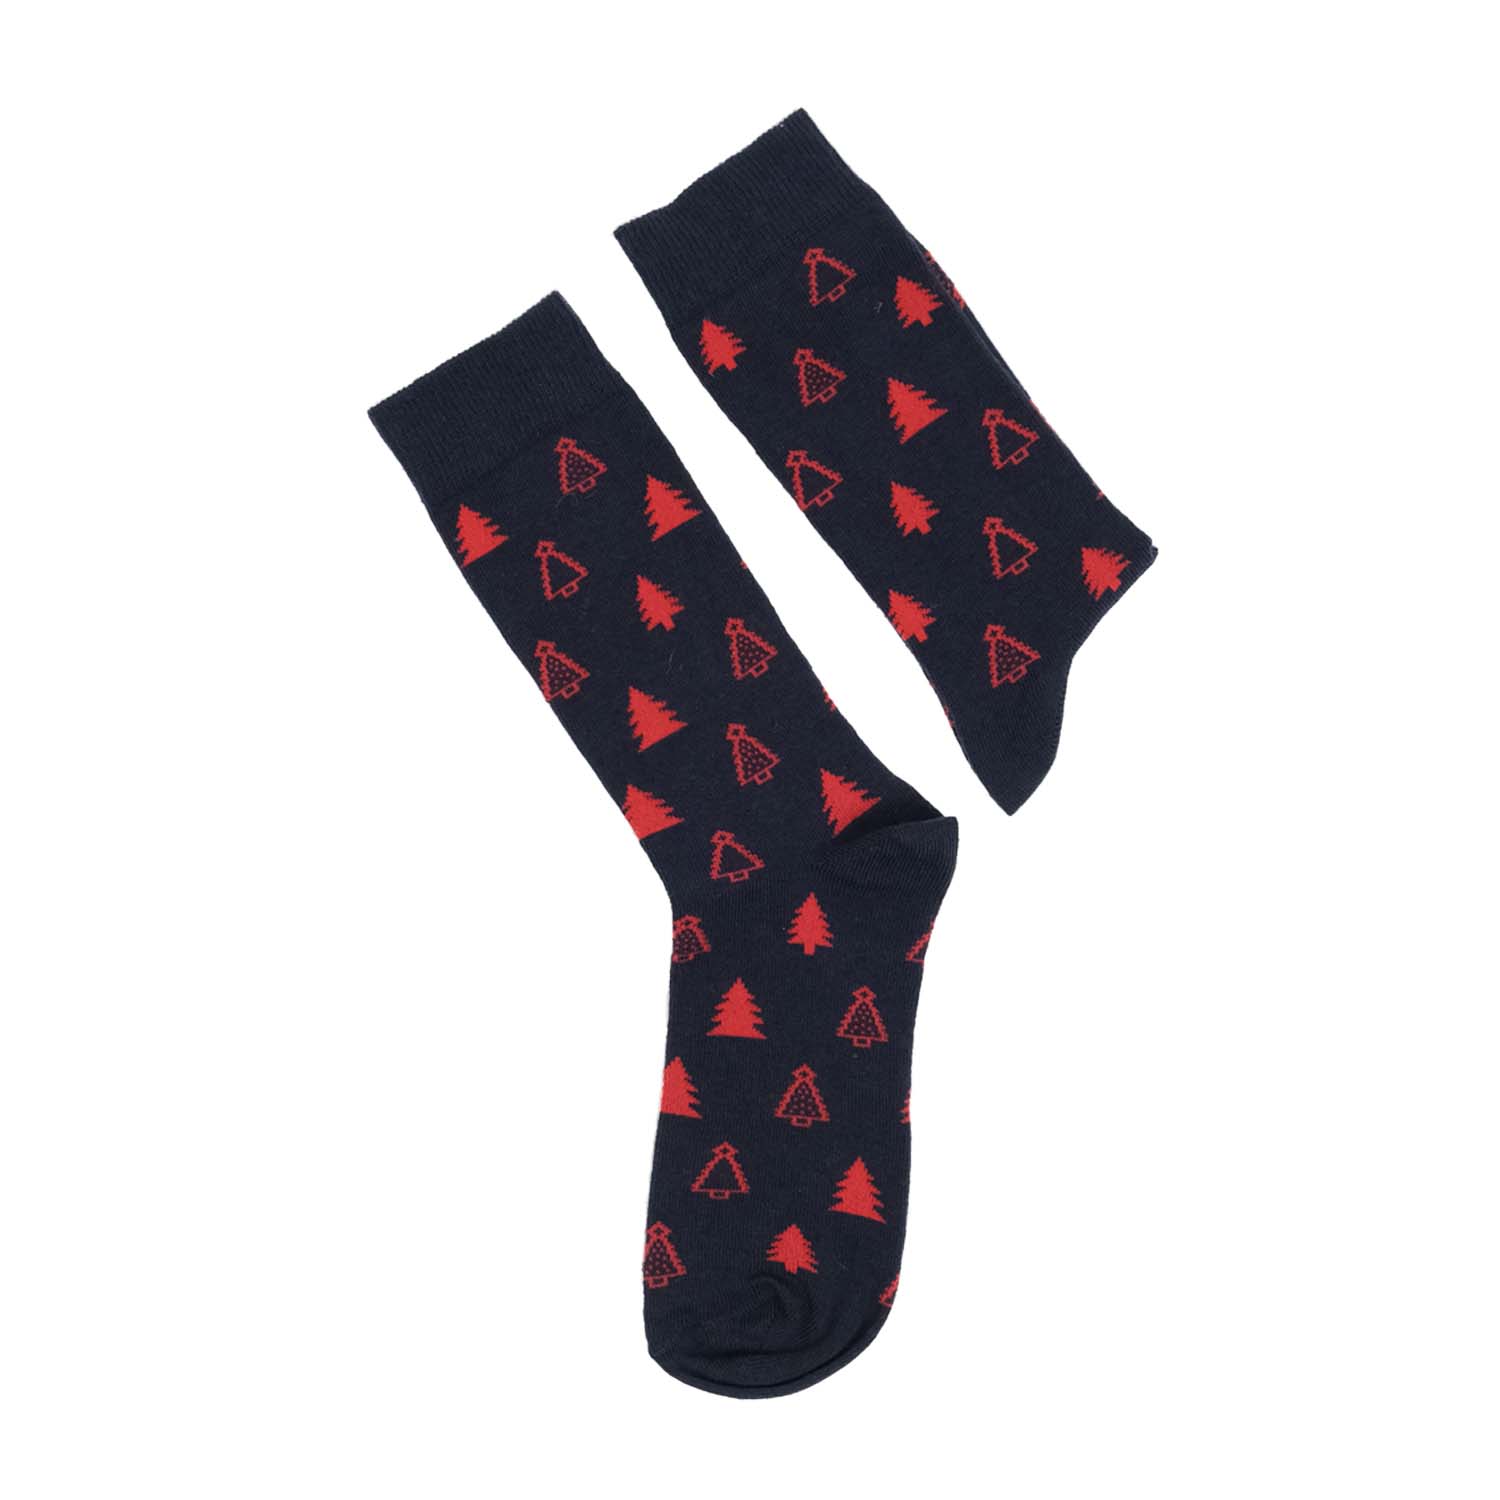 Moonwalk Sock – Lacivert Çam Ağacı Desenli Çorap